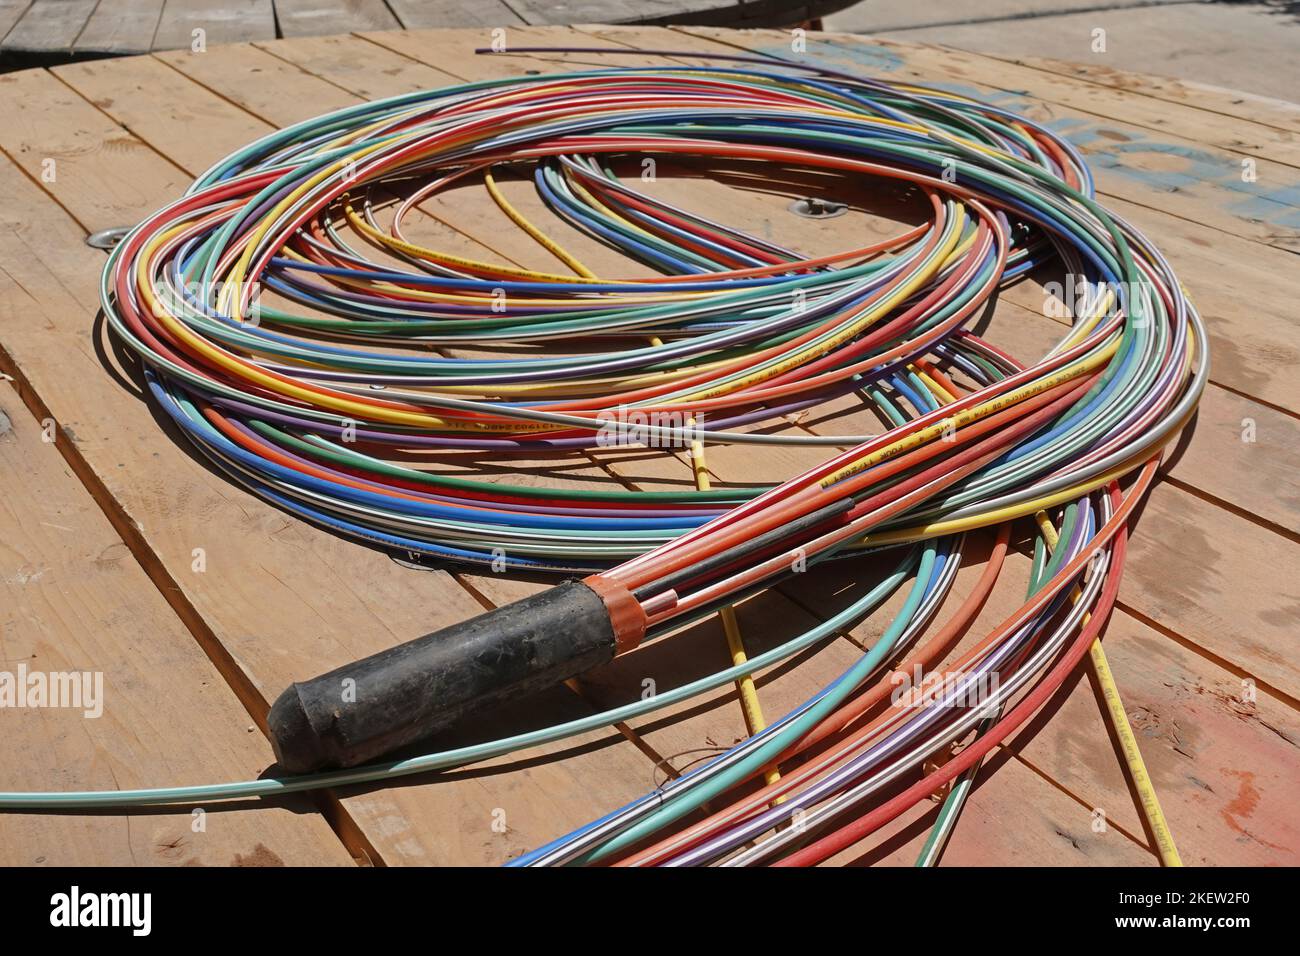 Atene, Grecia - 6 agosto 2022: Cavi in fibra ottica pacchetto di cavi Internet per telecomunicazioni con codifica a colori per il posizionamento nel sottosuolo. Foto Stock